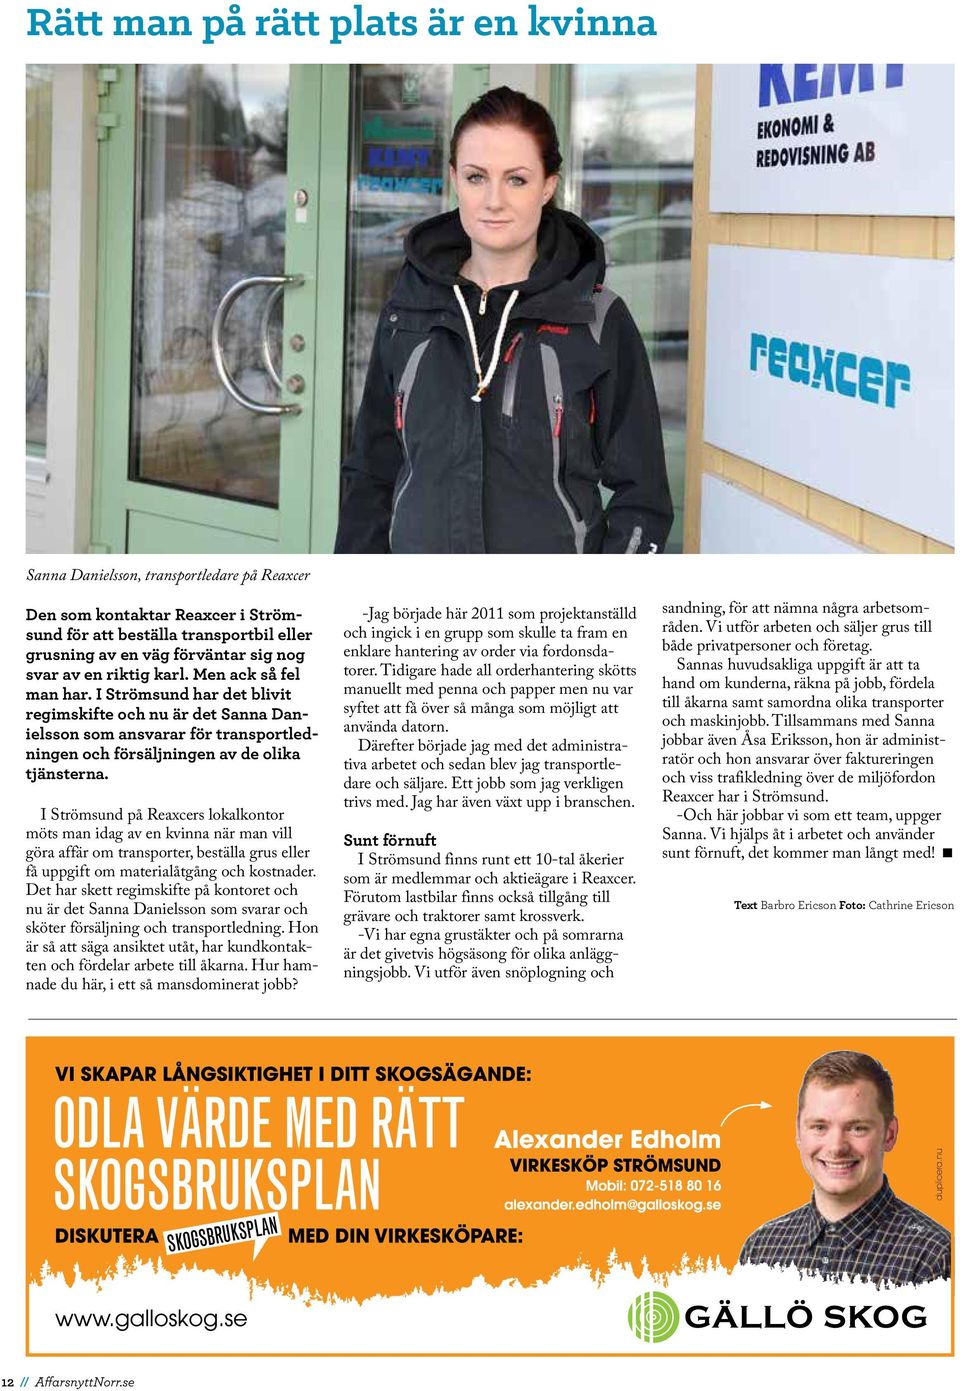 I Strömsund på Reaxcers lokalkontor möts man idag av en kvinna när man vill göra affär om transporter, beställa grus eller få uppgift om materialåtgång och kostnader.